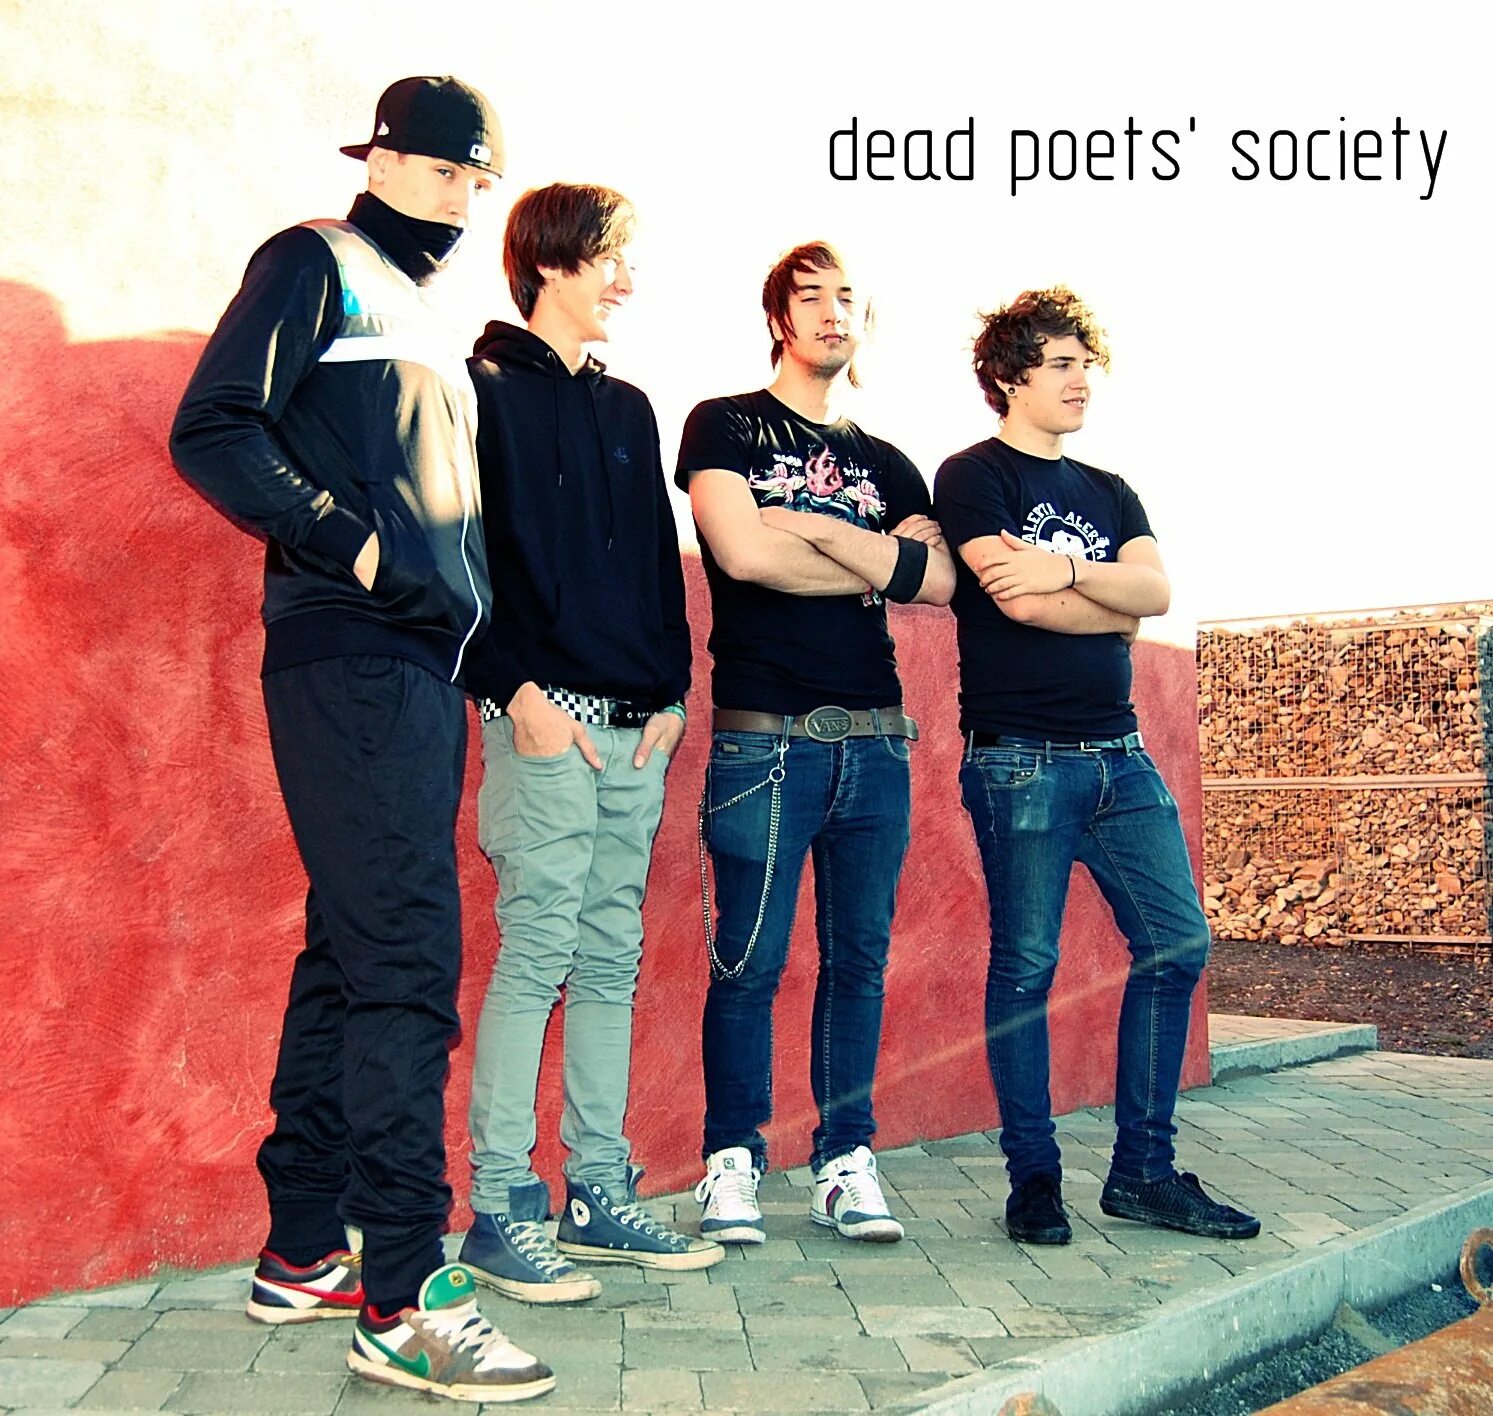 Poet society. Dead poets группа. Dead poets Society группа солист. Dead poets фото.